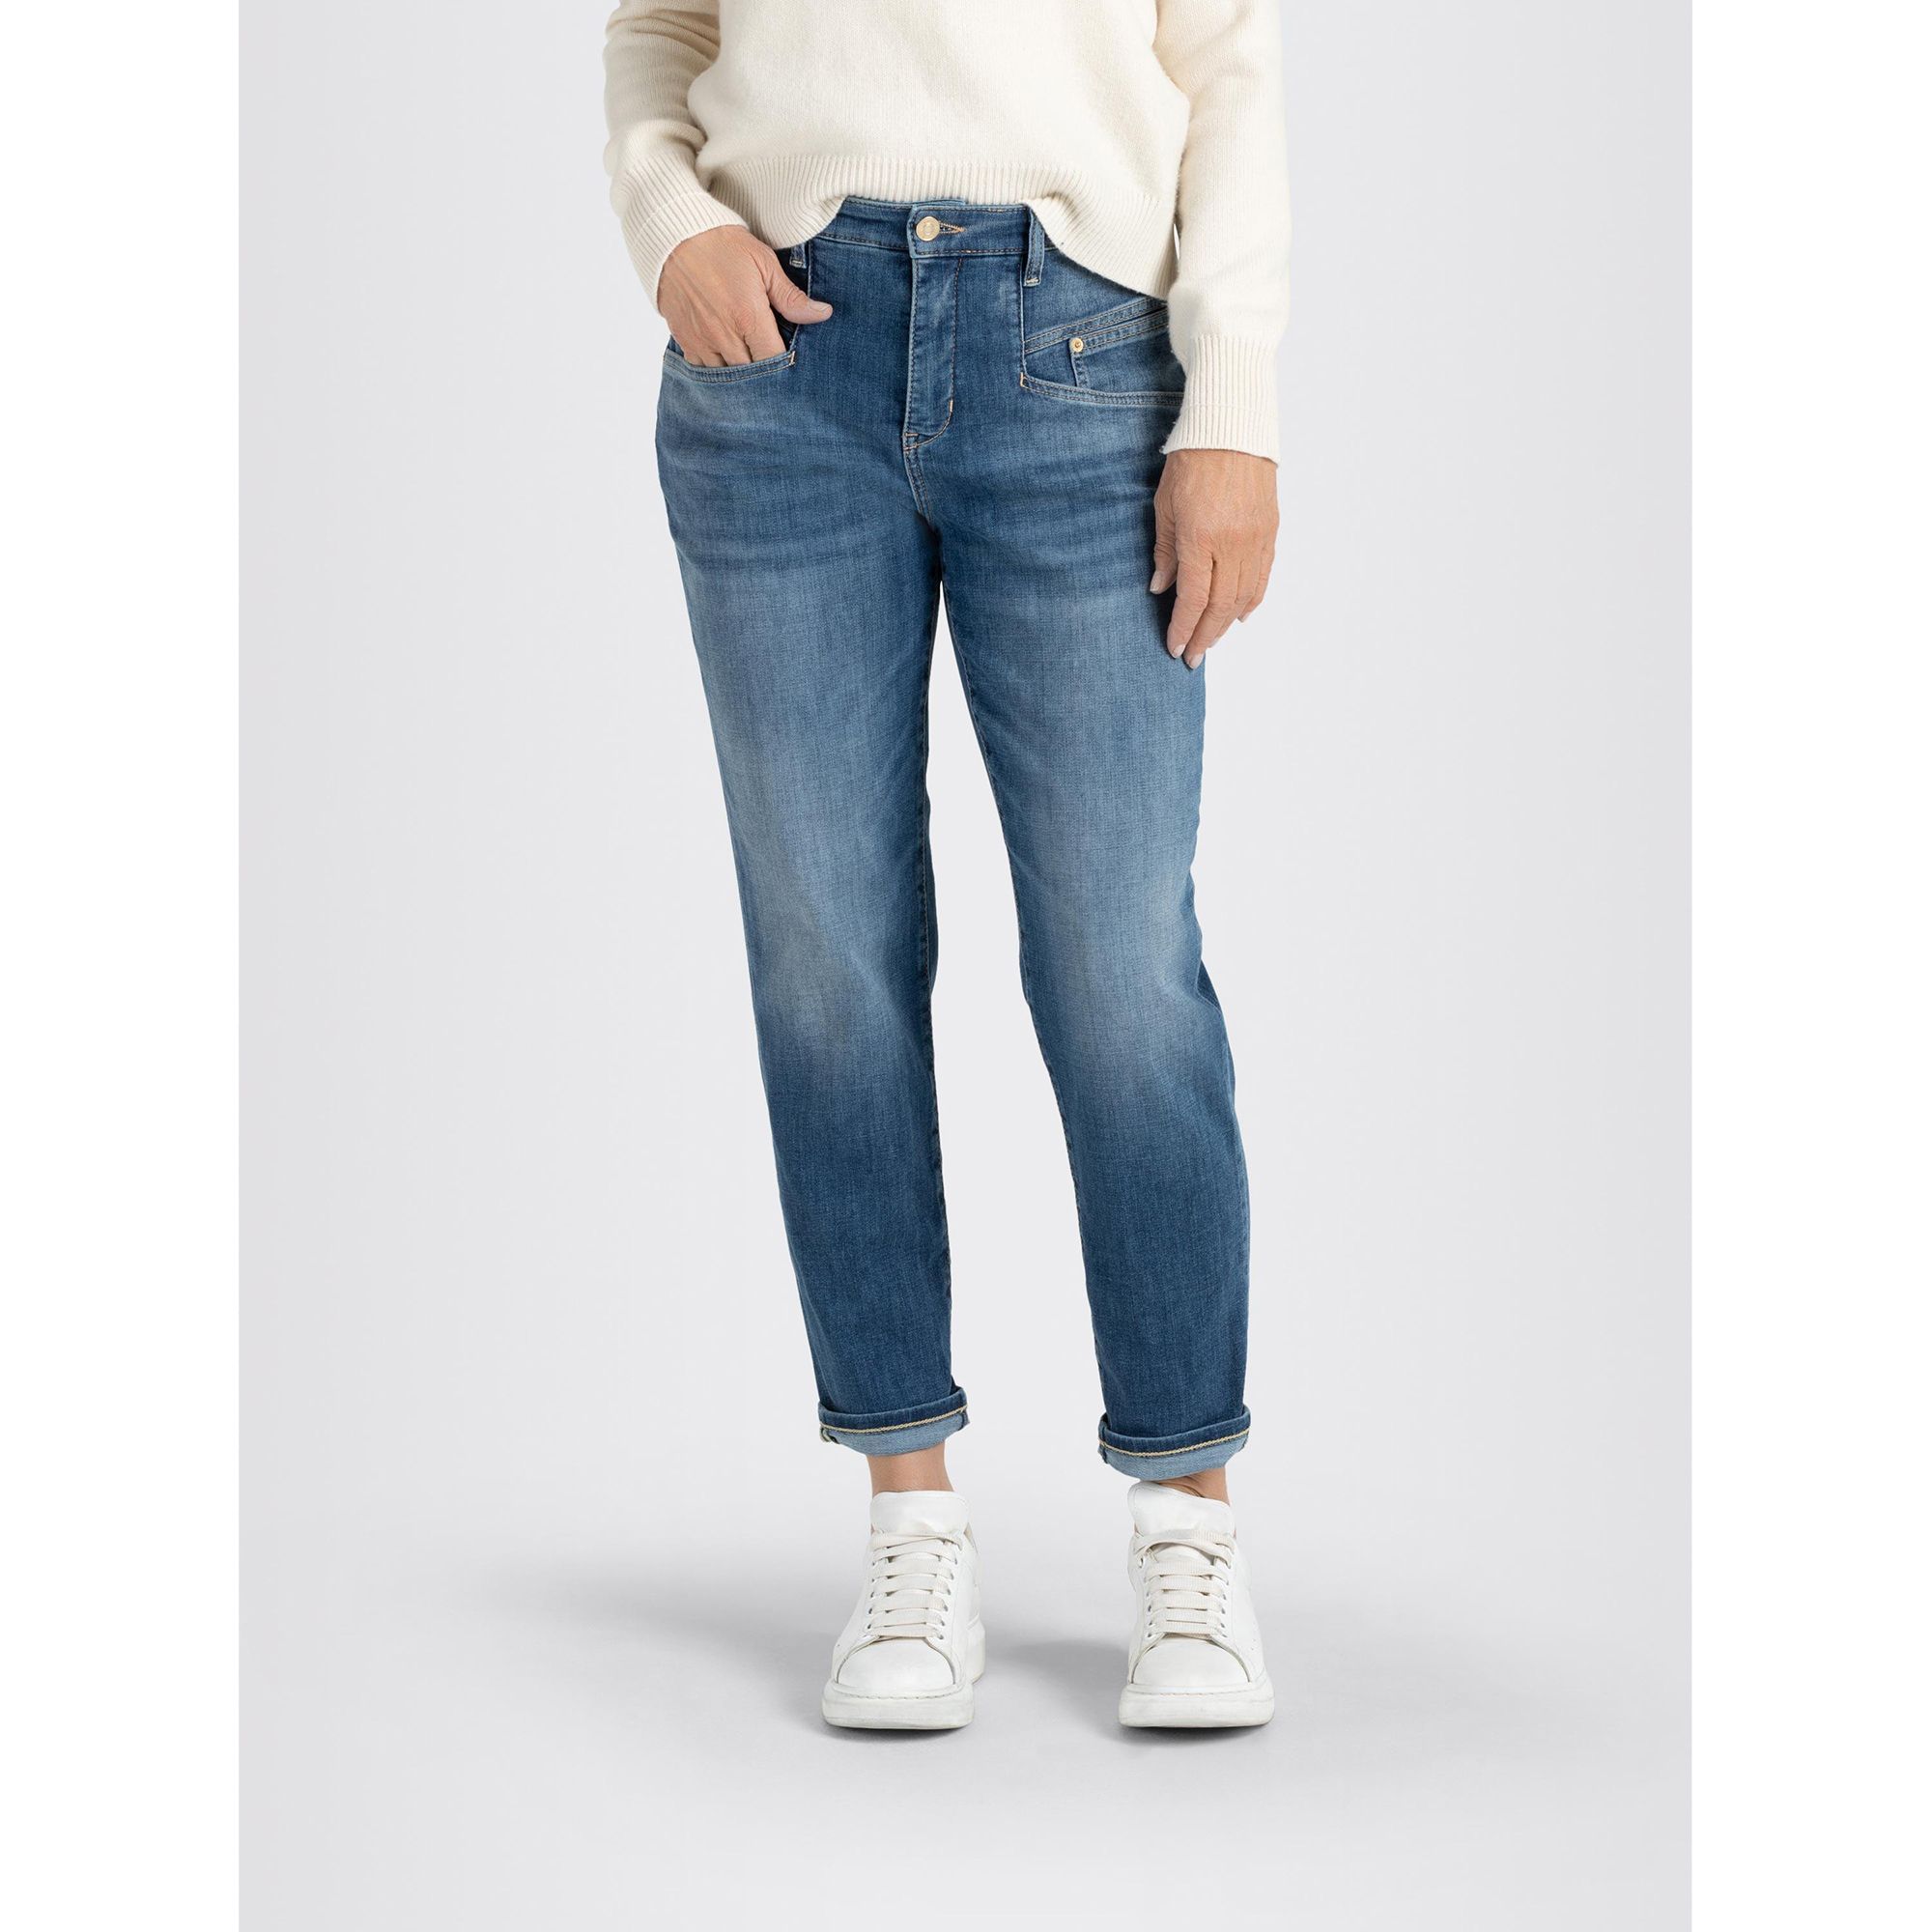 Leibhöhe Jeans MAC konischer Beinverlauf 5-Pocket-Style hohe Rich Carrot